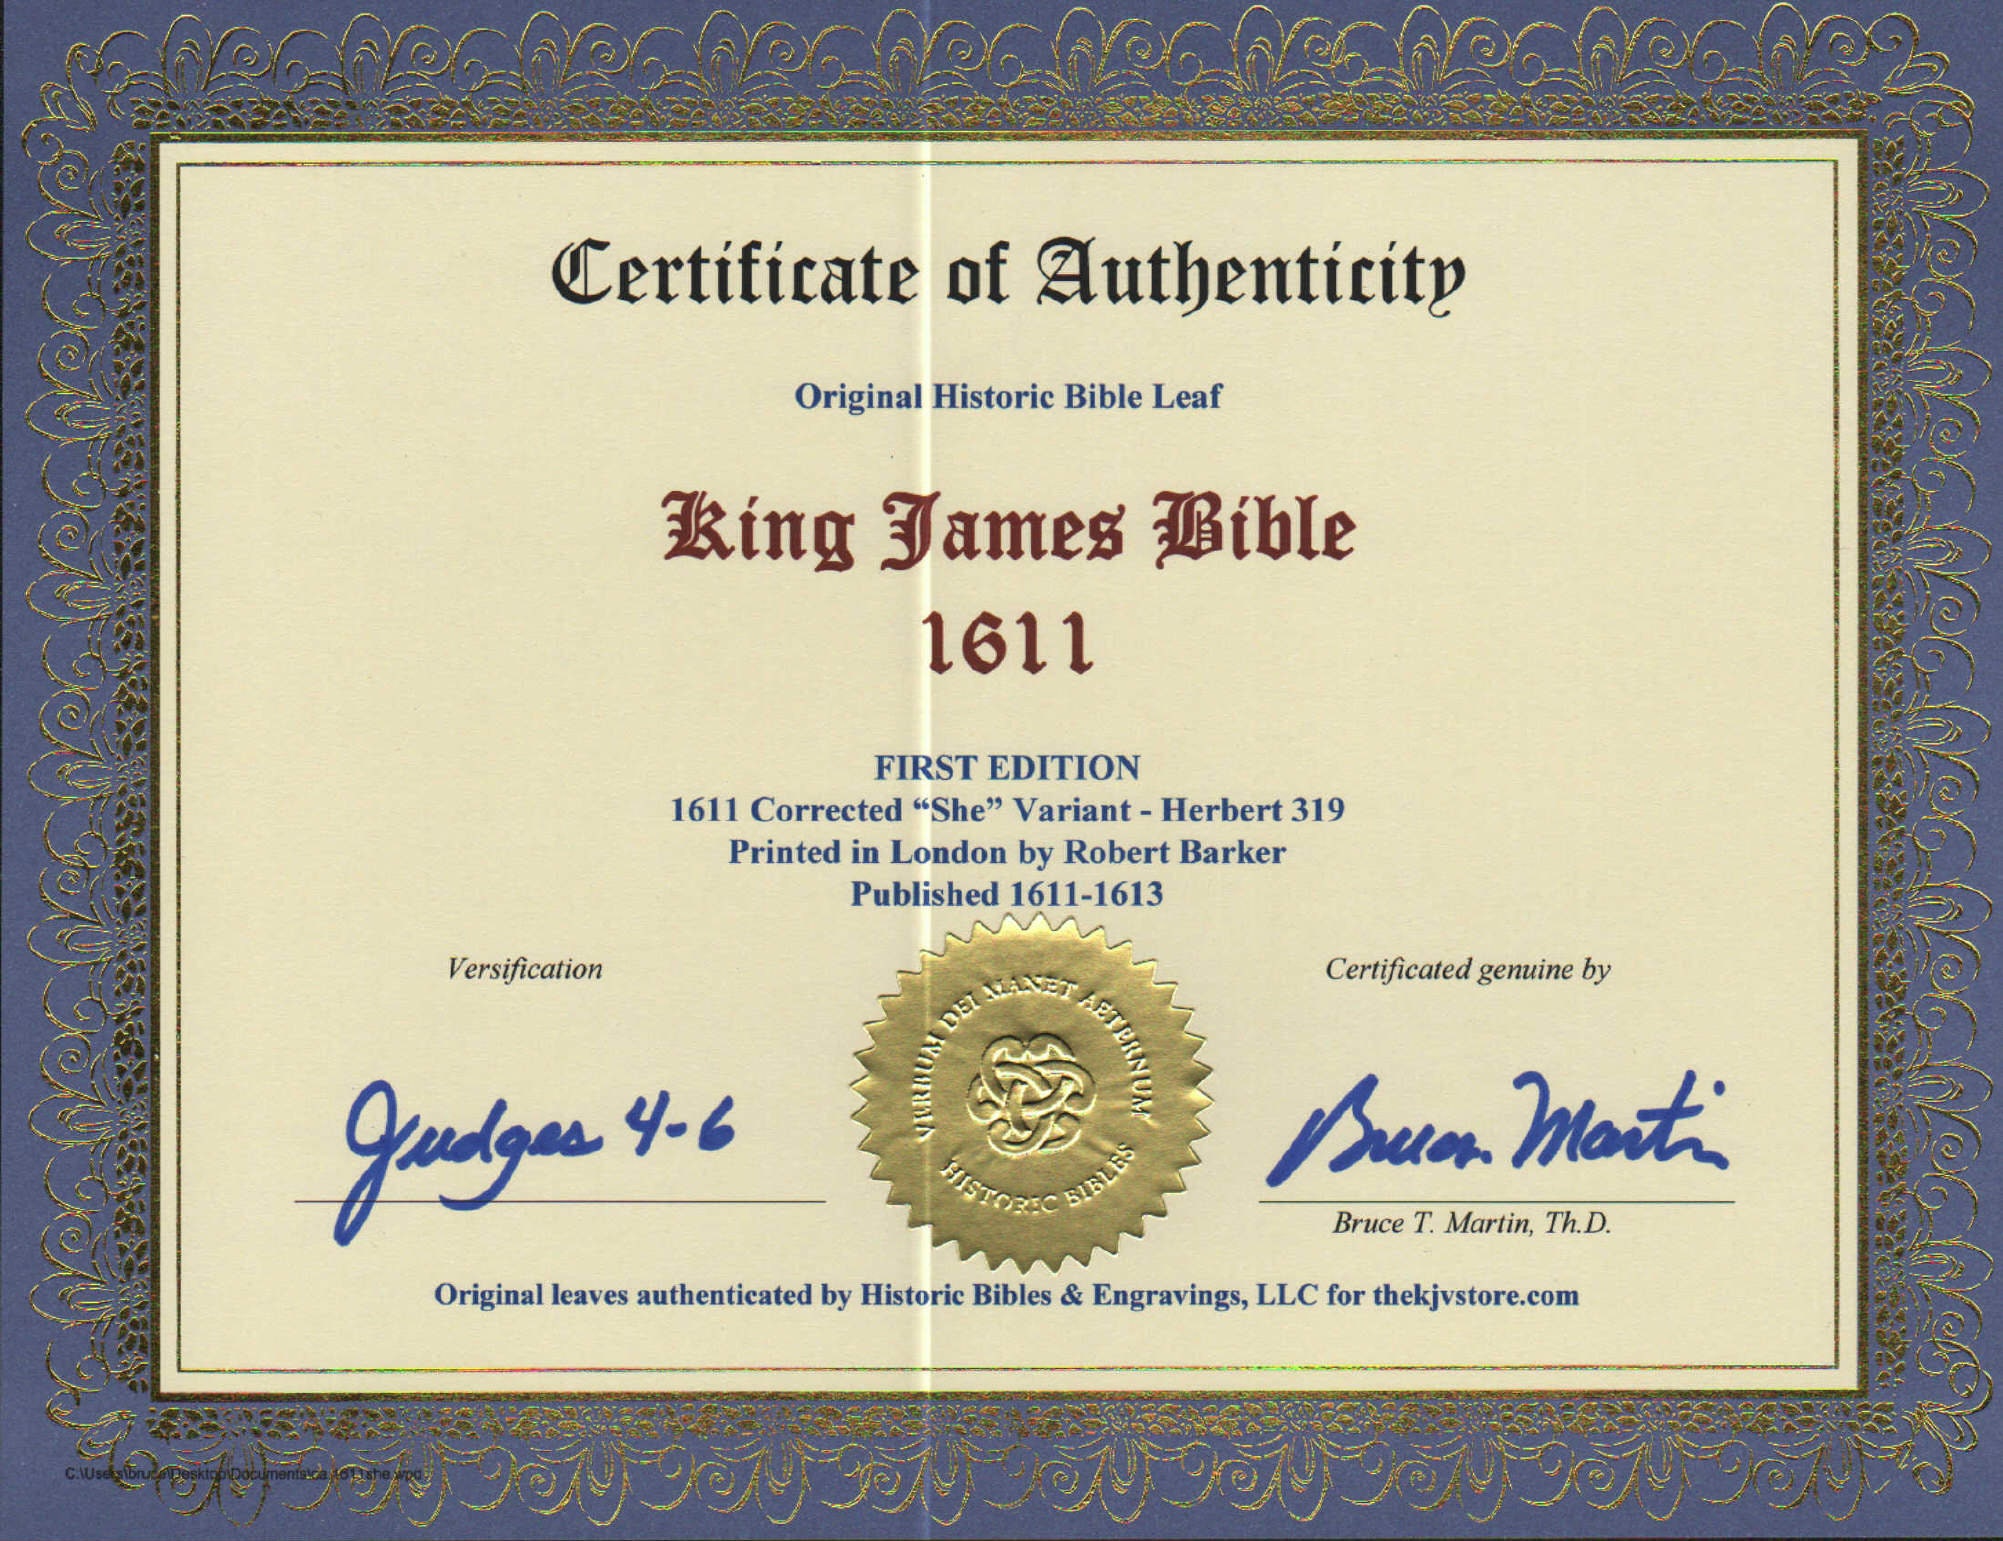 1611 KJV KING JAMES BIBLE LEAF PAGE BOOK OF JUDGES 9:39-11:10 ISRAEL  PUNISHED VG